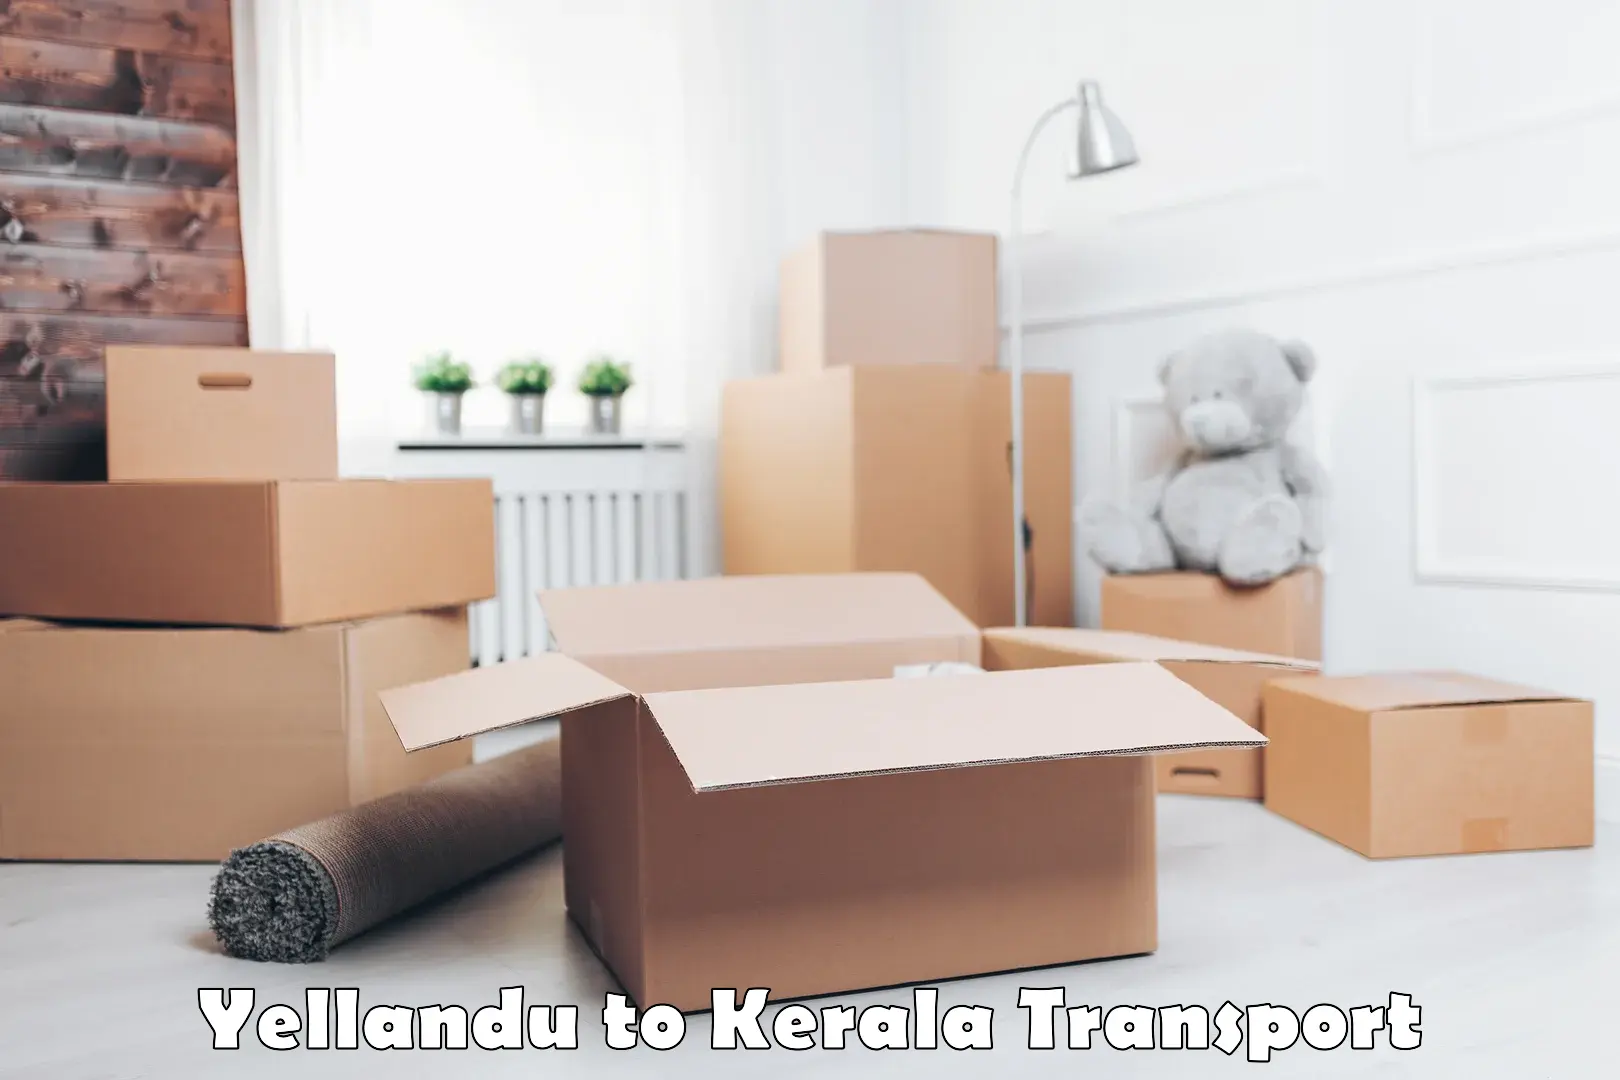 India truck logistics services Yellandu to Kottarakkara